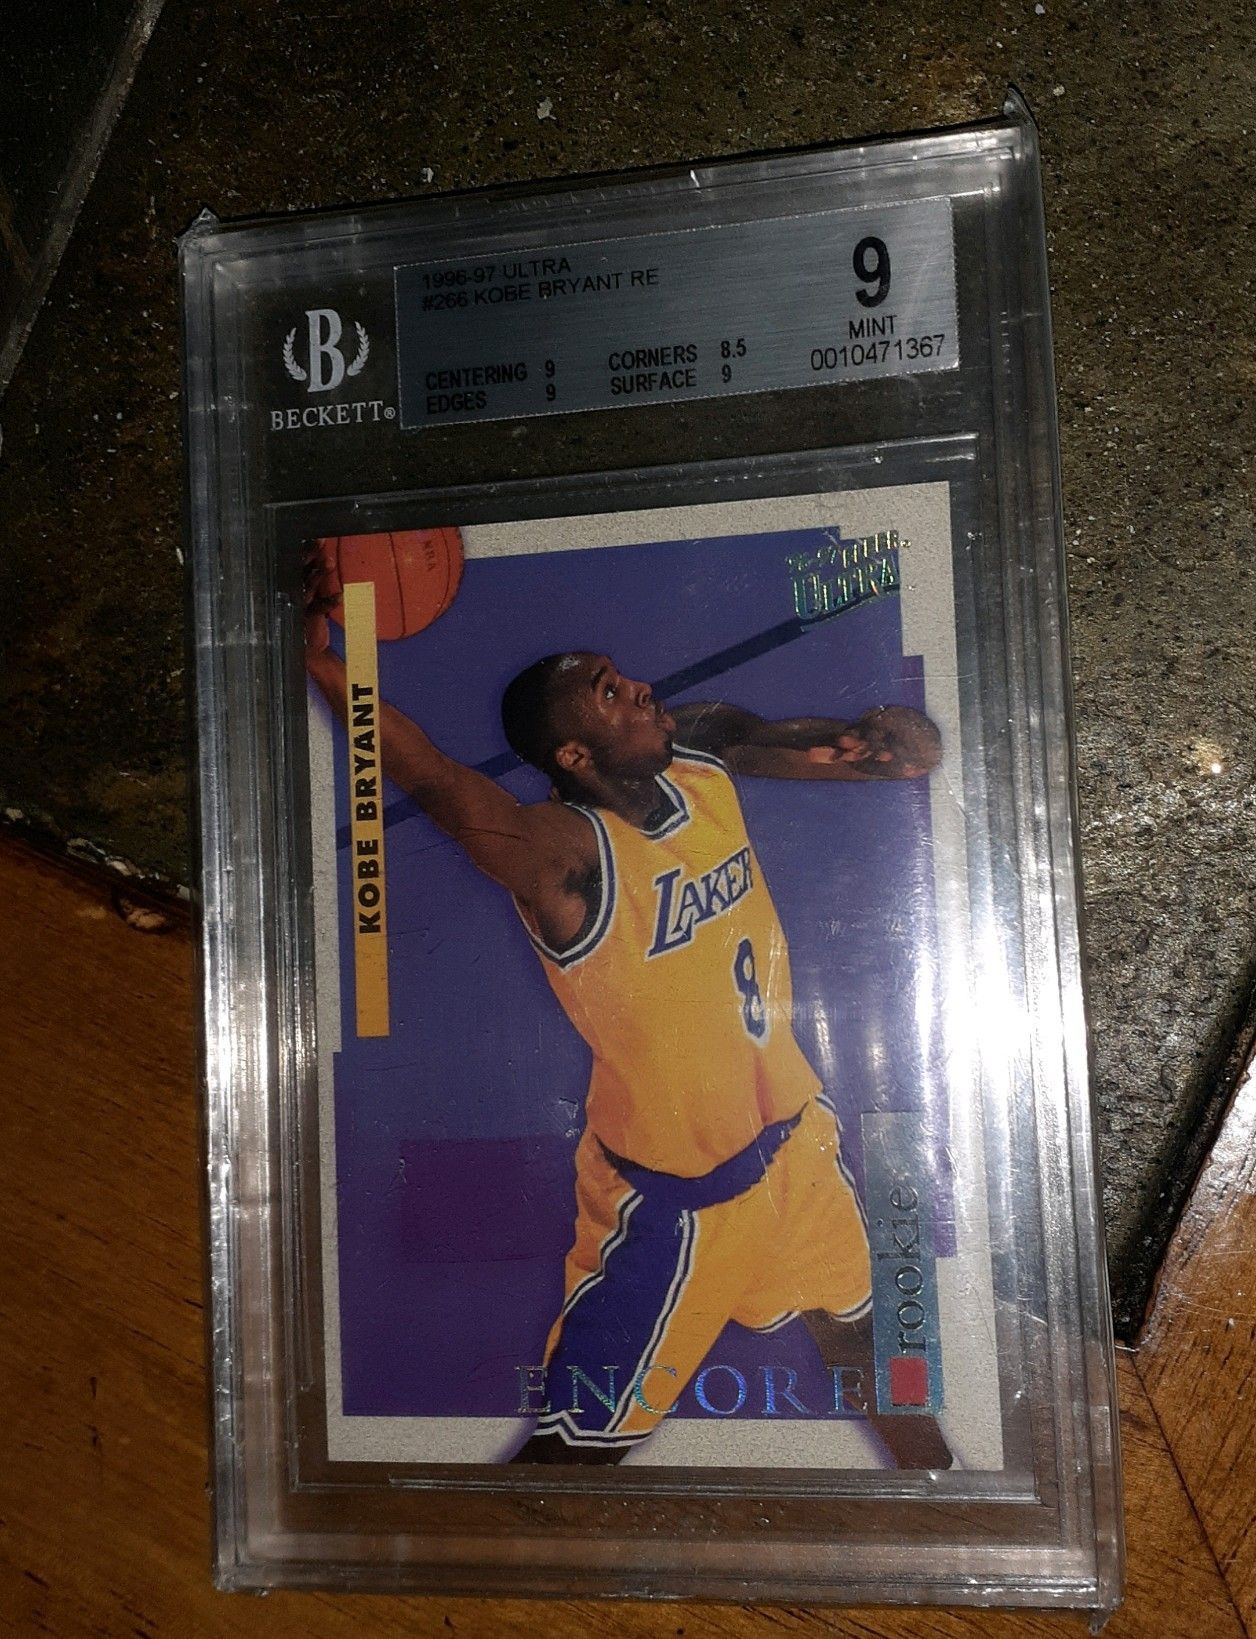 1996 Fleer Ultra Encore Kobe Bryant Rookie Card.